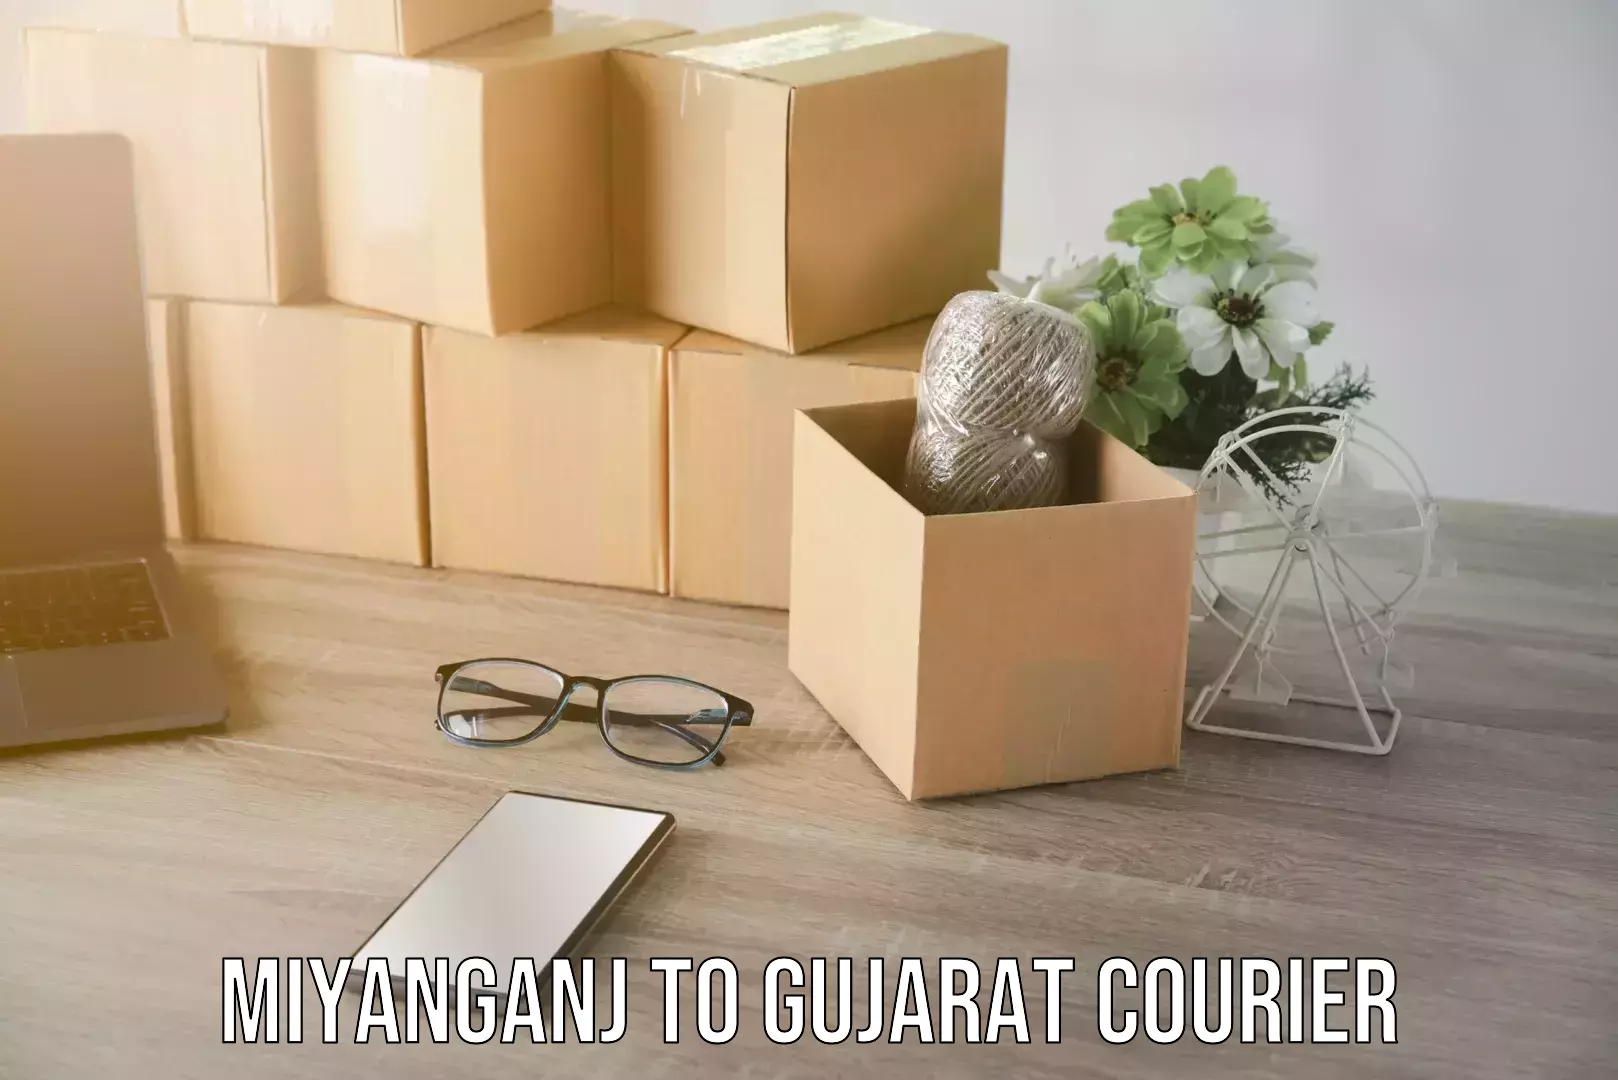 Furniture moving service Miyanganj to Gujarat